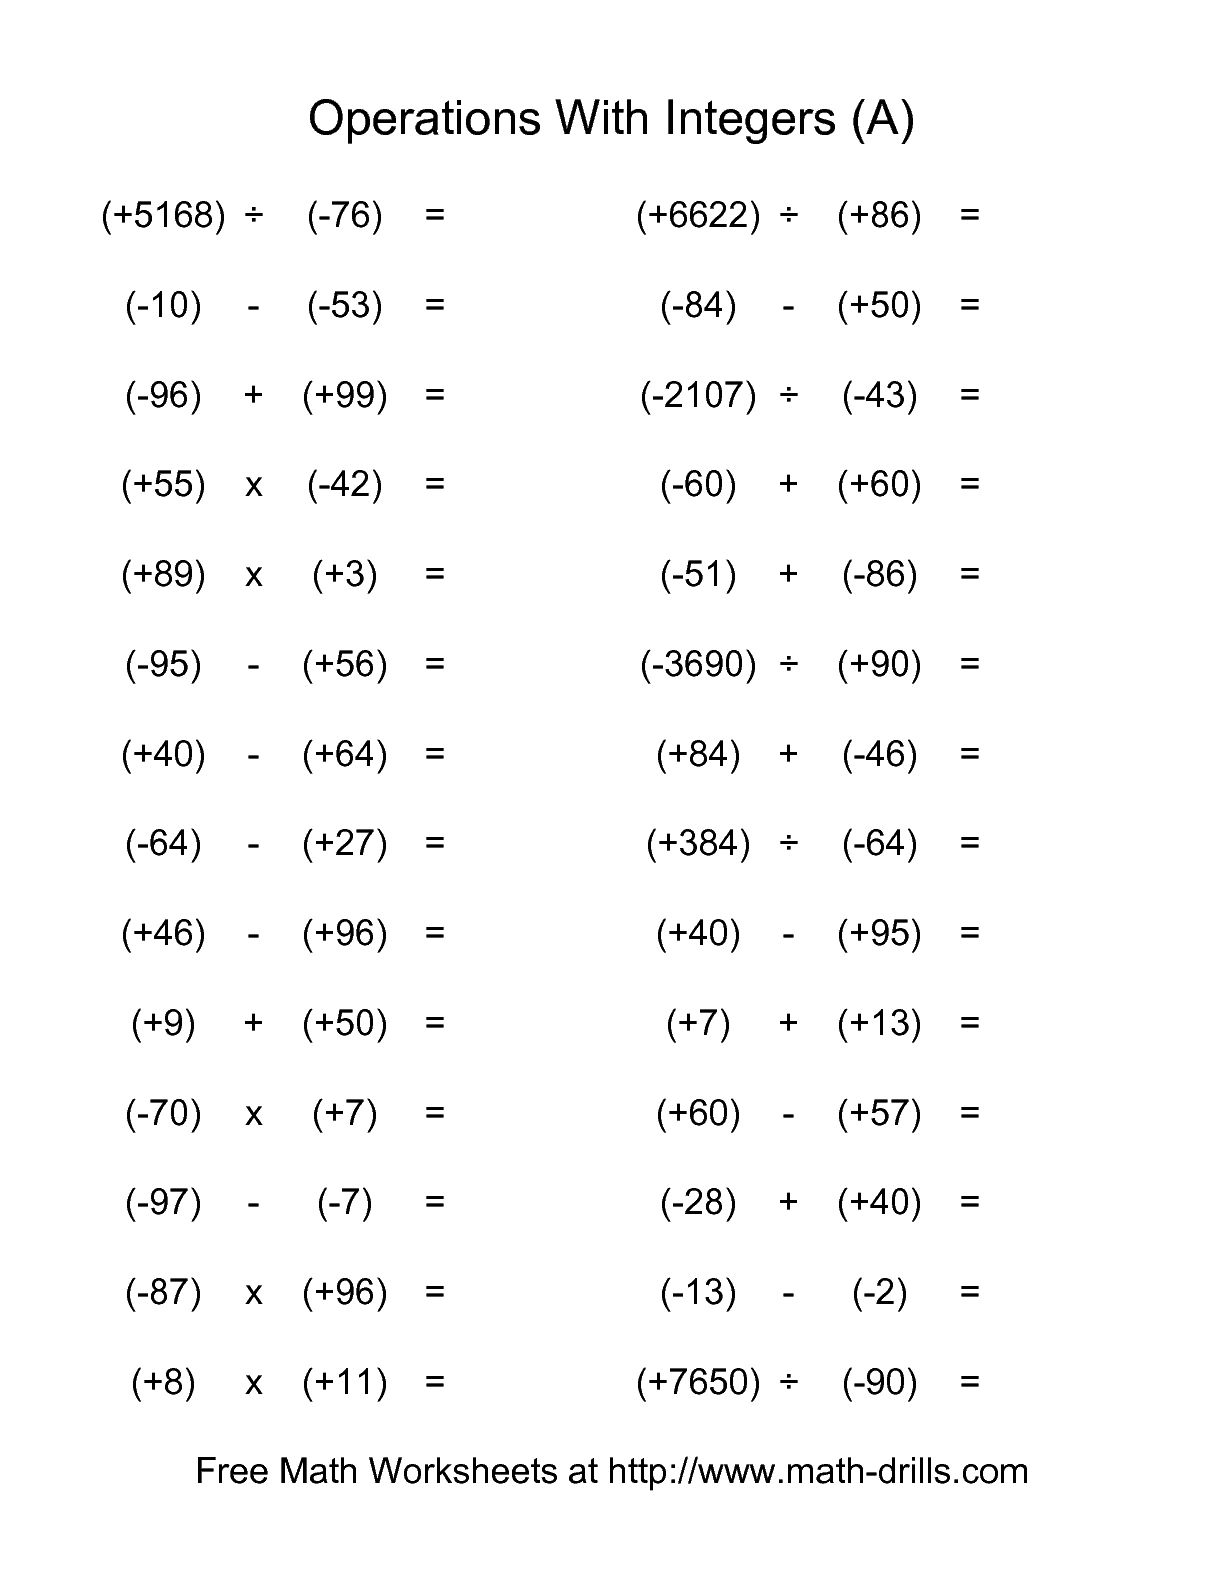 14-multiplication-of-negative-numbers-worksheet-worksheeto